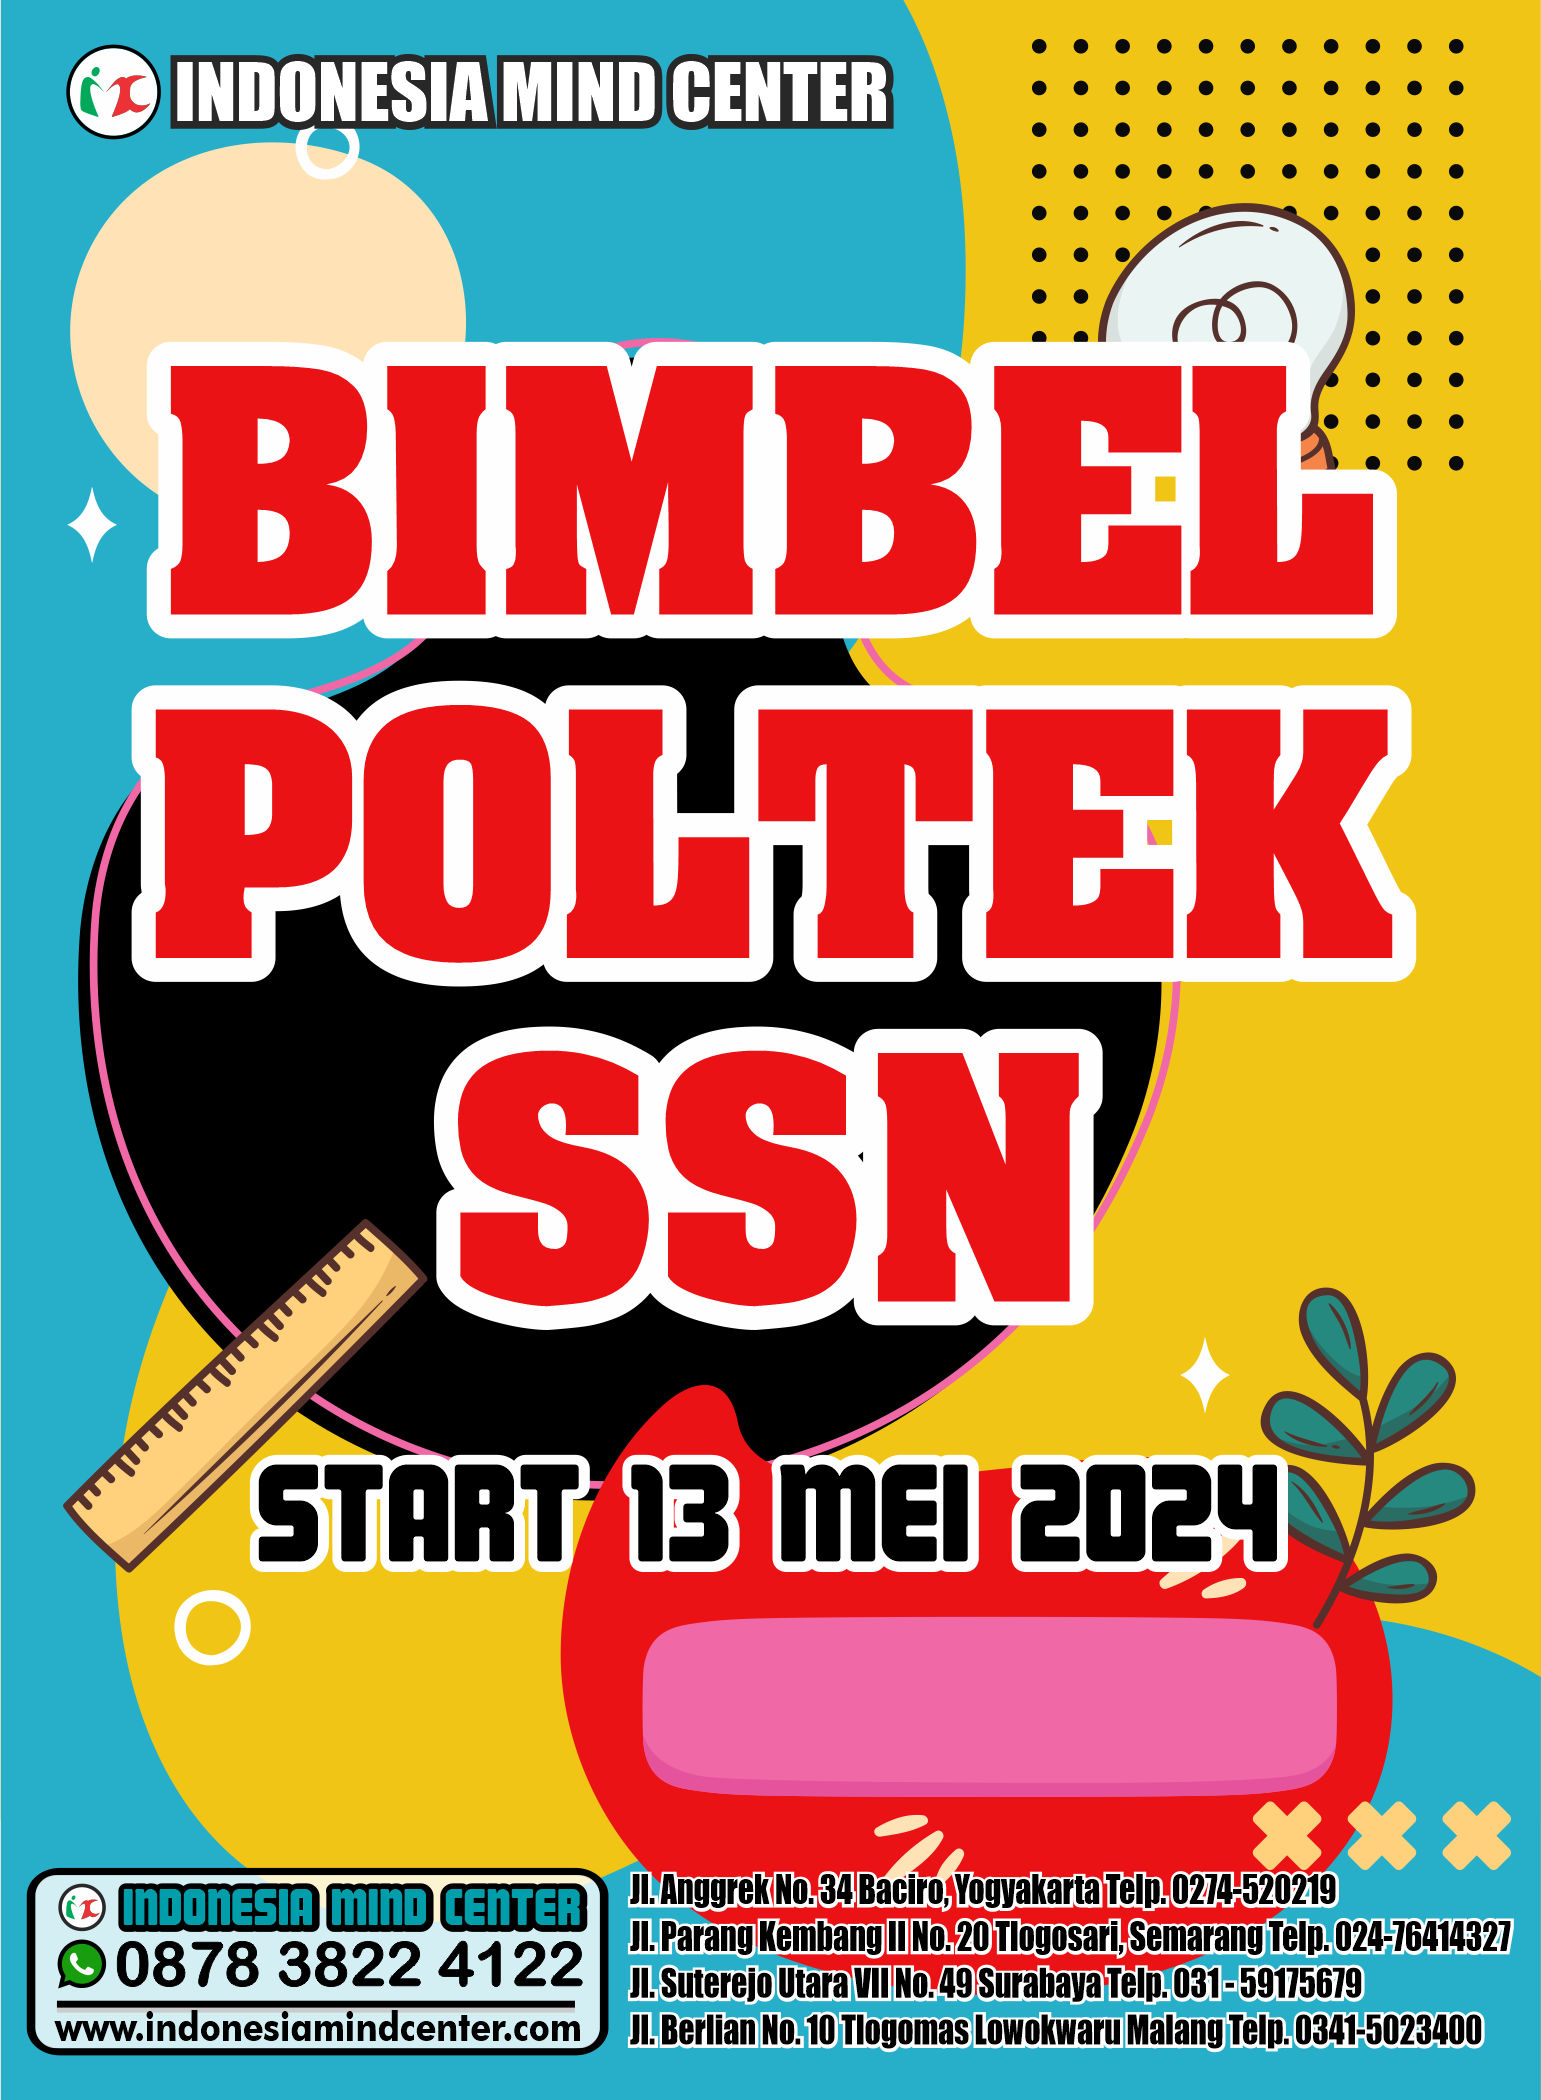 BIMBEL POLTEK SSN START 13 MEI 2024